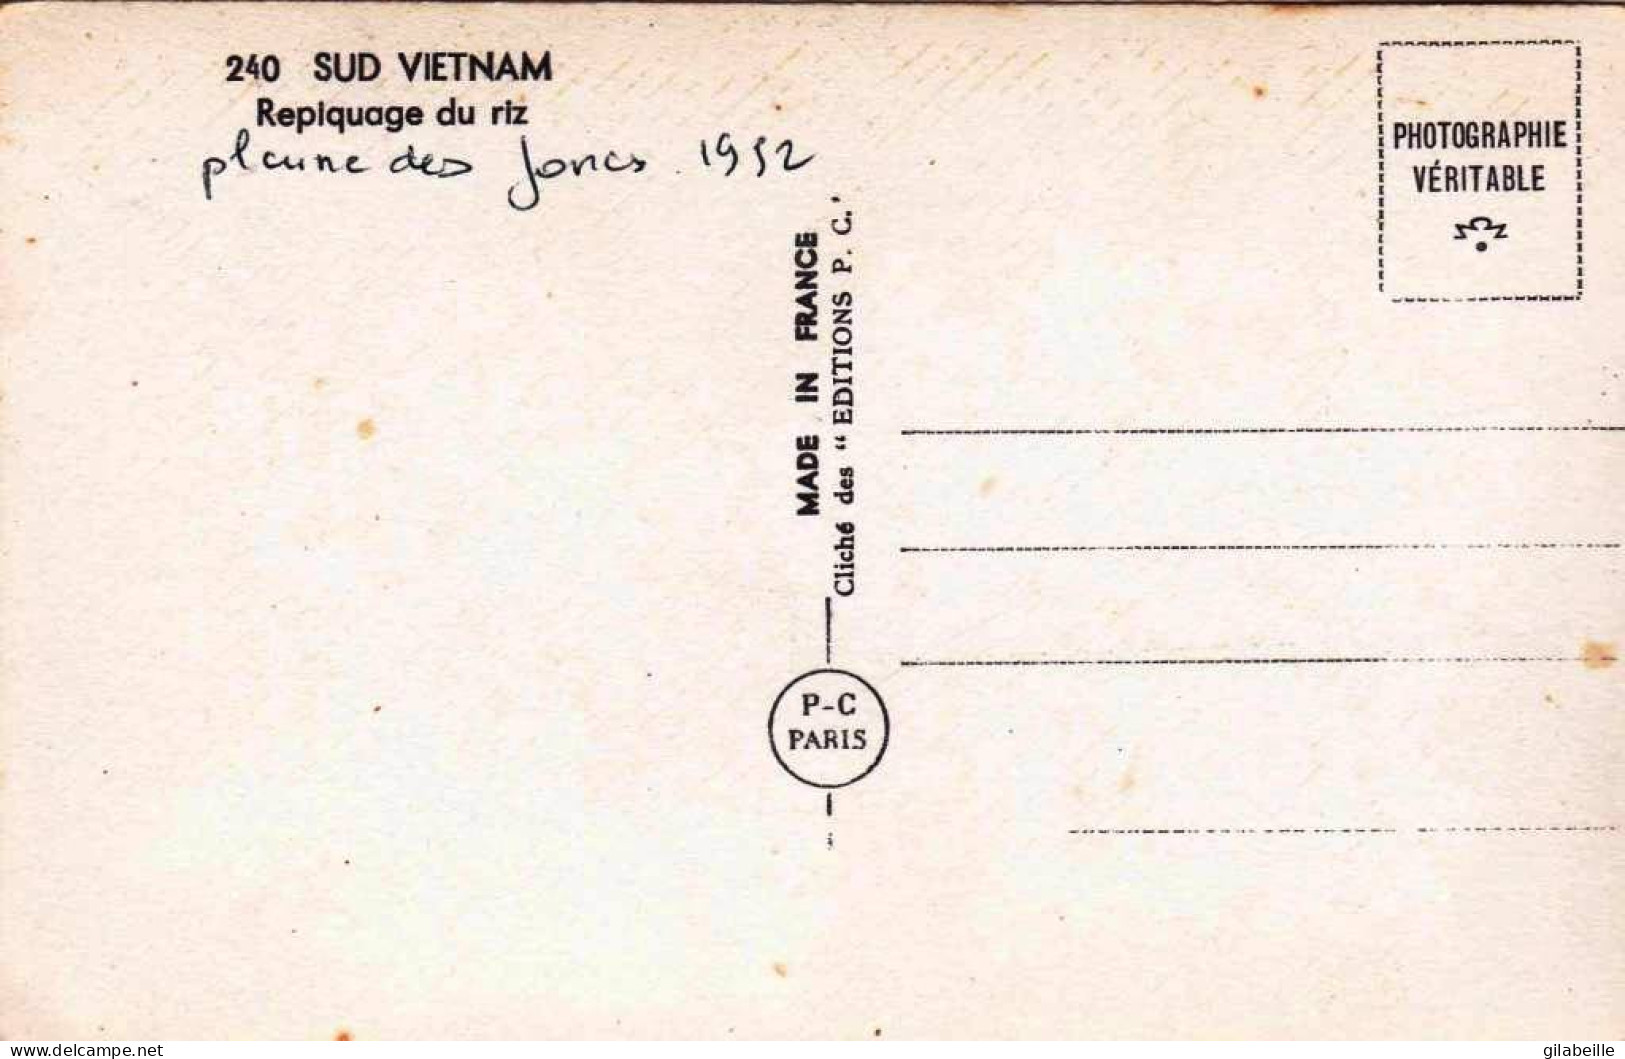 Viêt-Nam - Cochinchine - SAIGON  - Repiquage Du Riz - Plaine Des Joncs - 1952 - Vietnam